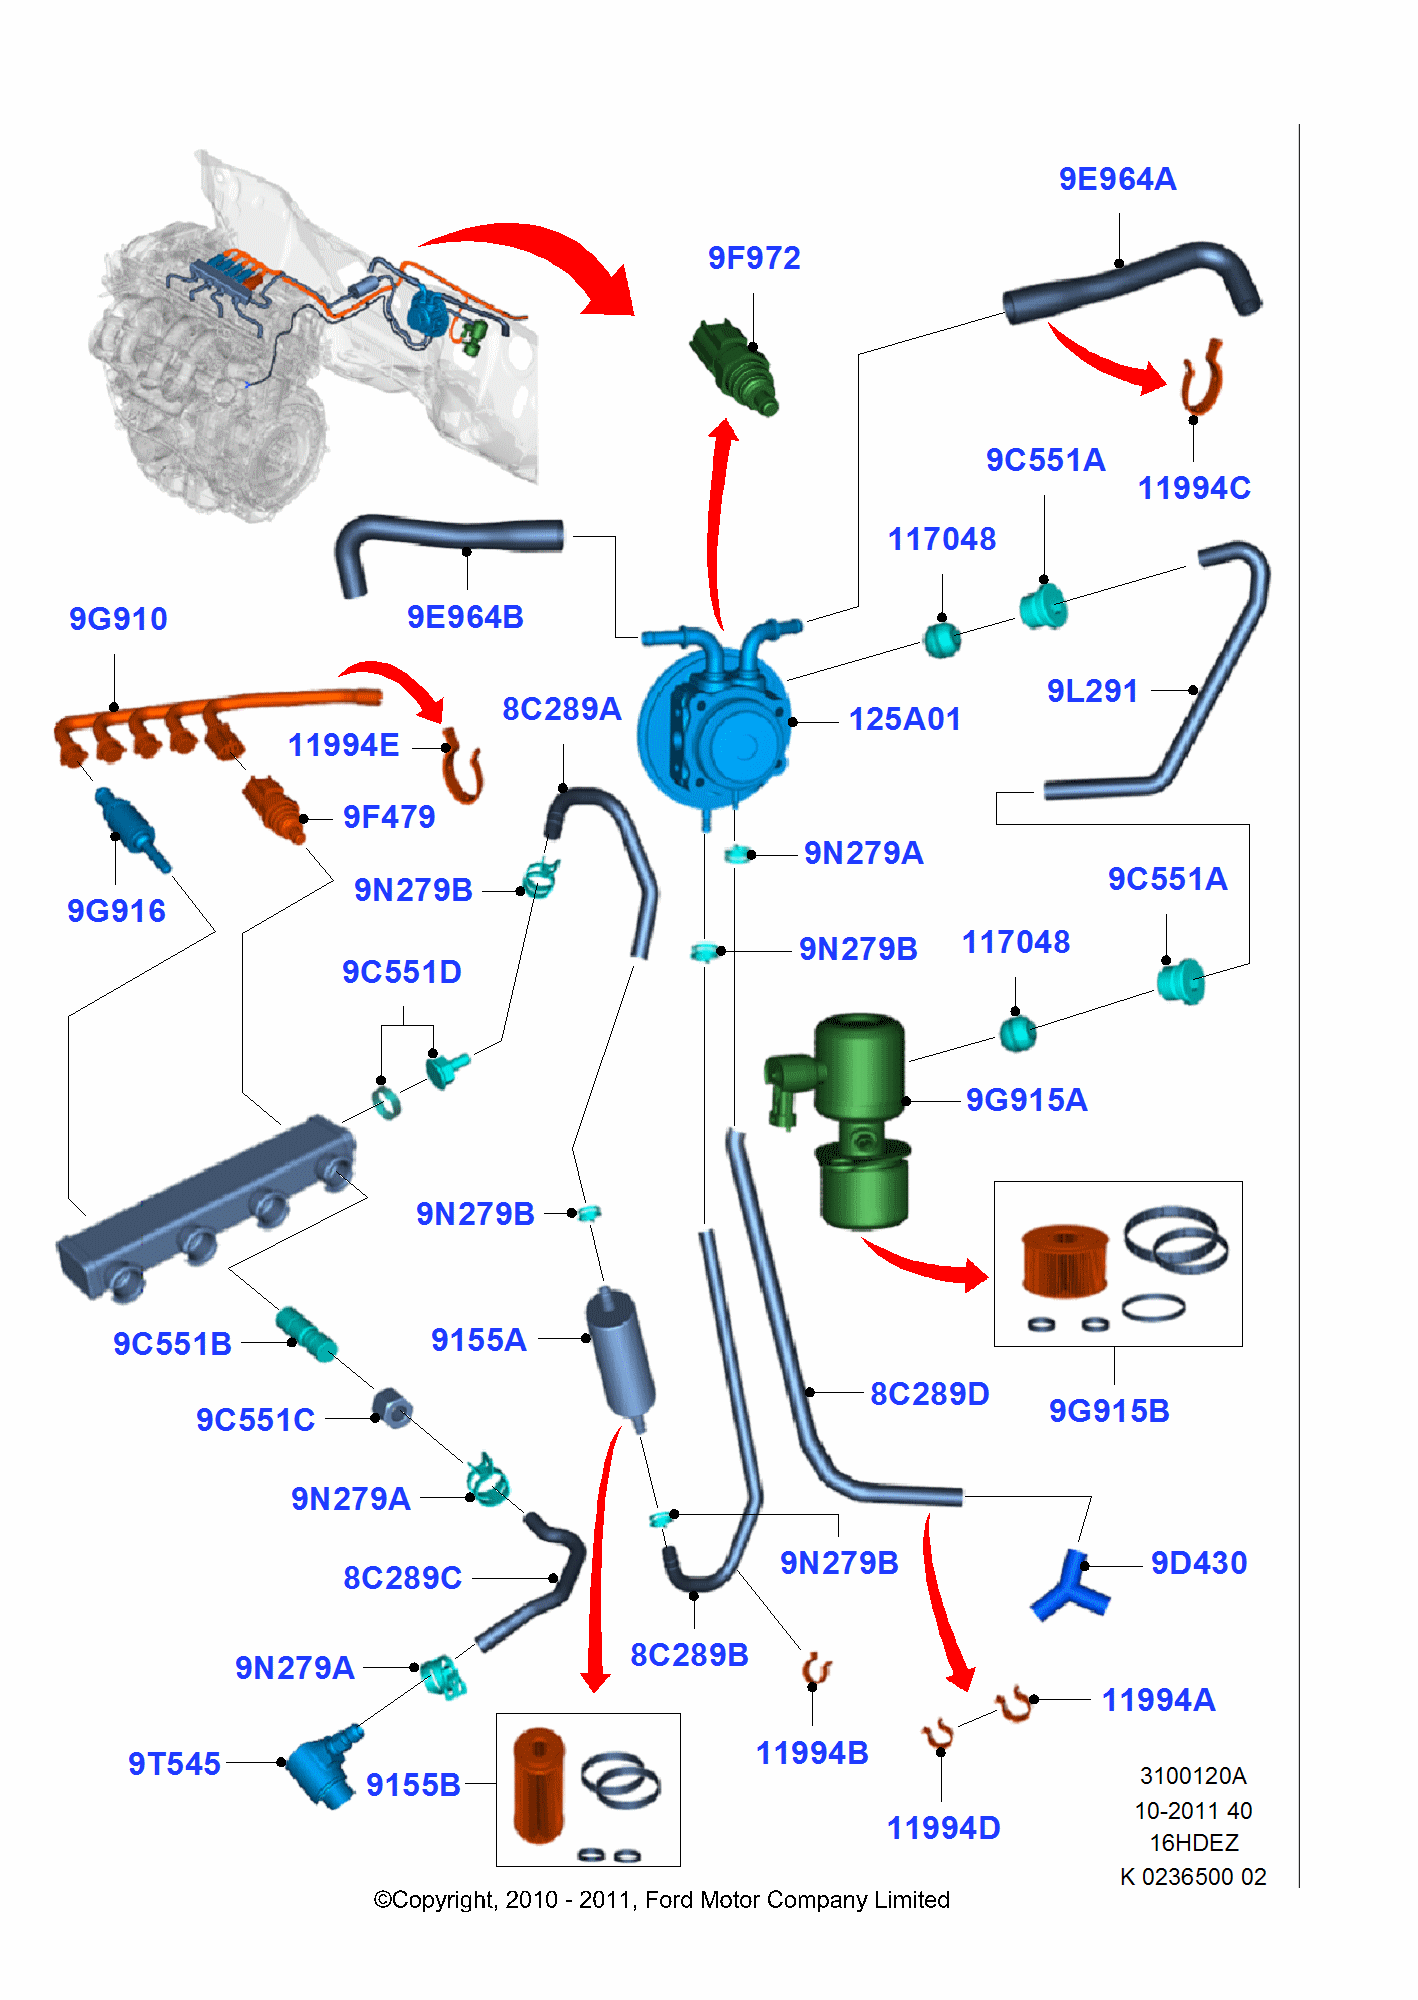 Alternative Fuel System för Ford Focus Focus 2008-2011           (CB4)